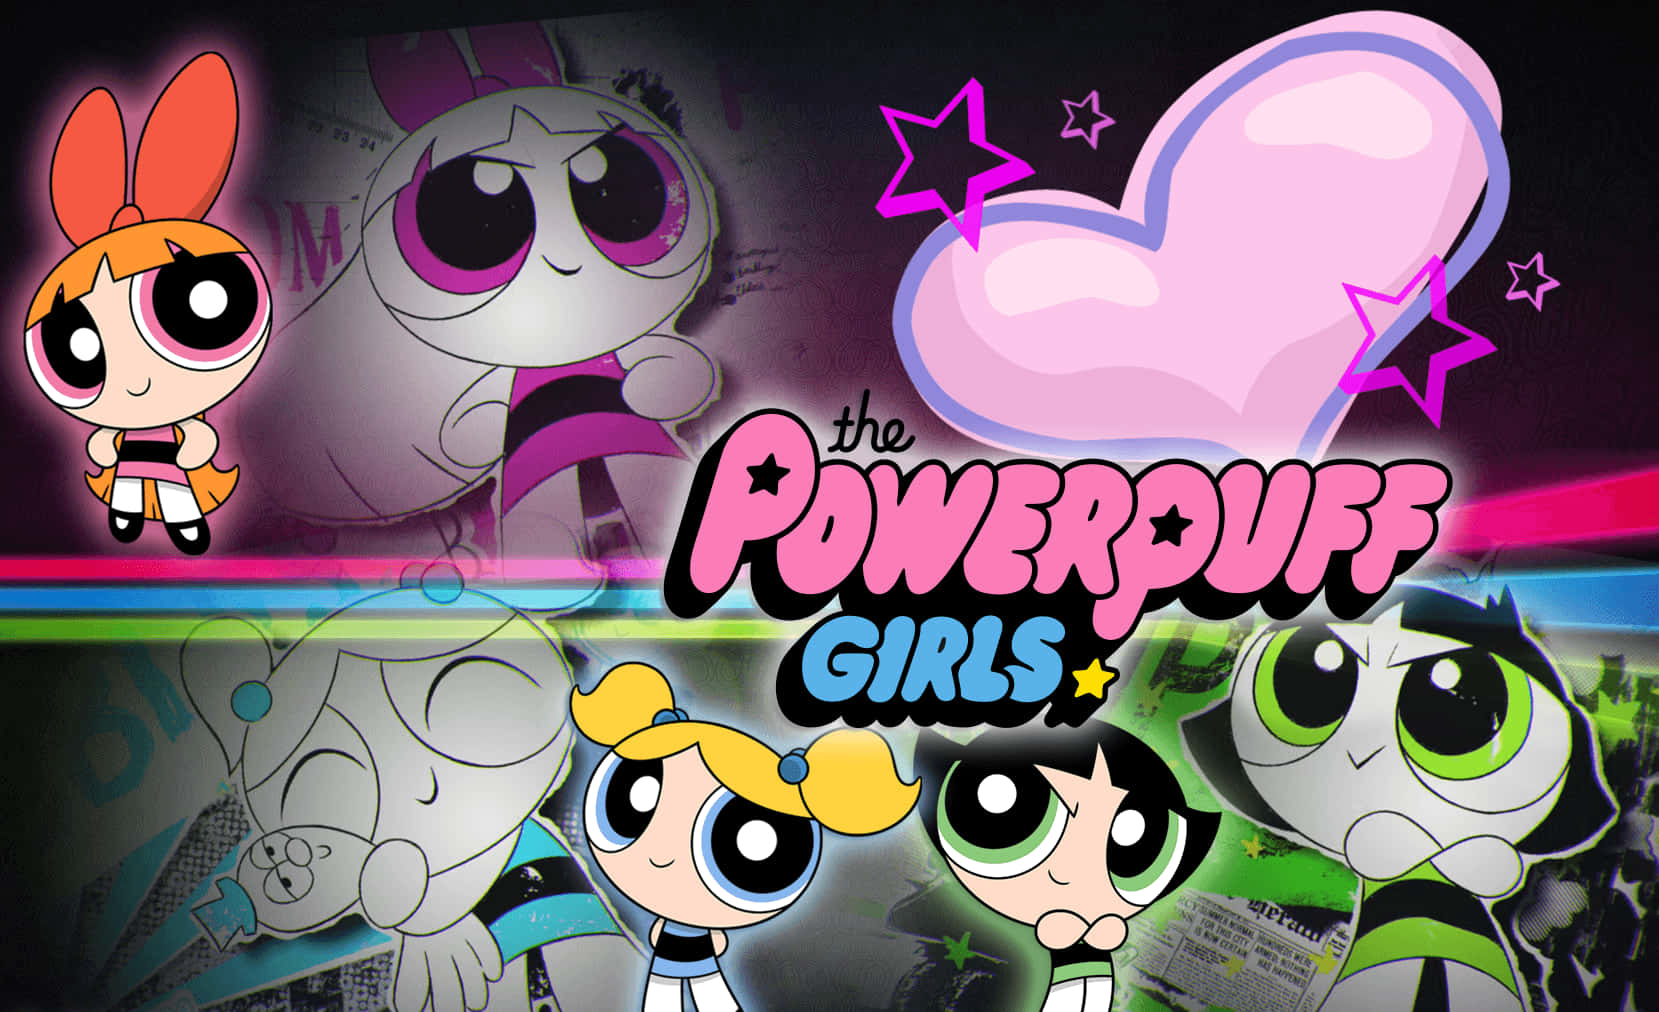 The Powerpuff Girls Meet Heart Wallpaper